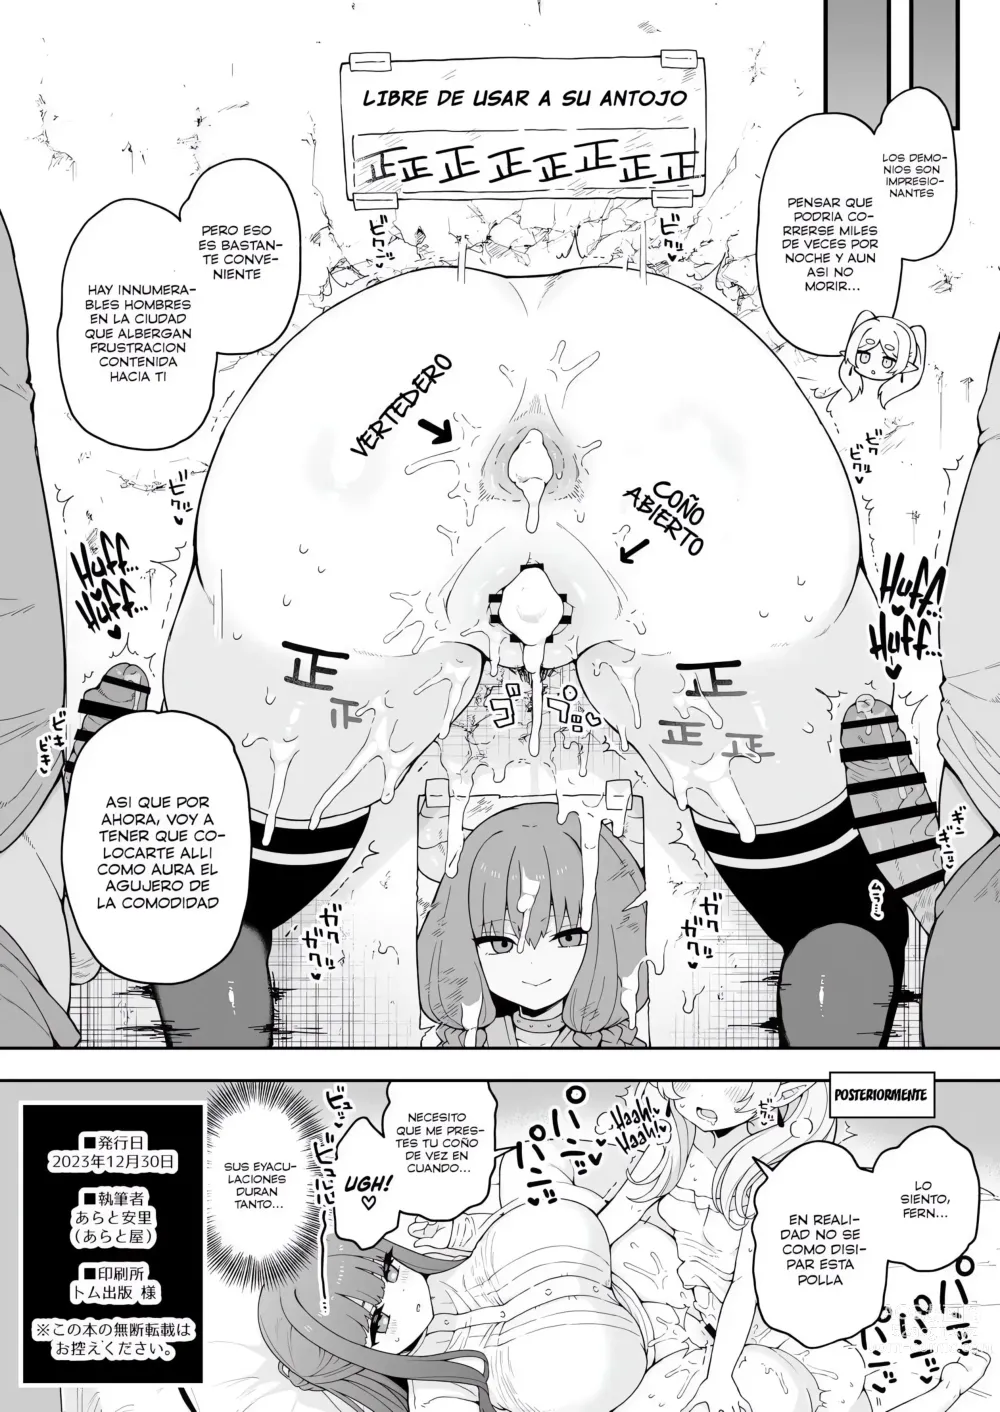 Page 11 of doujinshi Magia que hace crecer una polla gigante